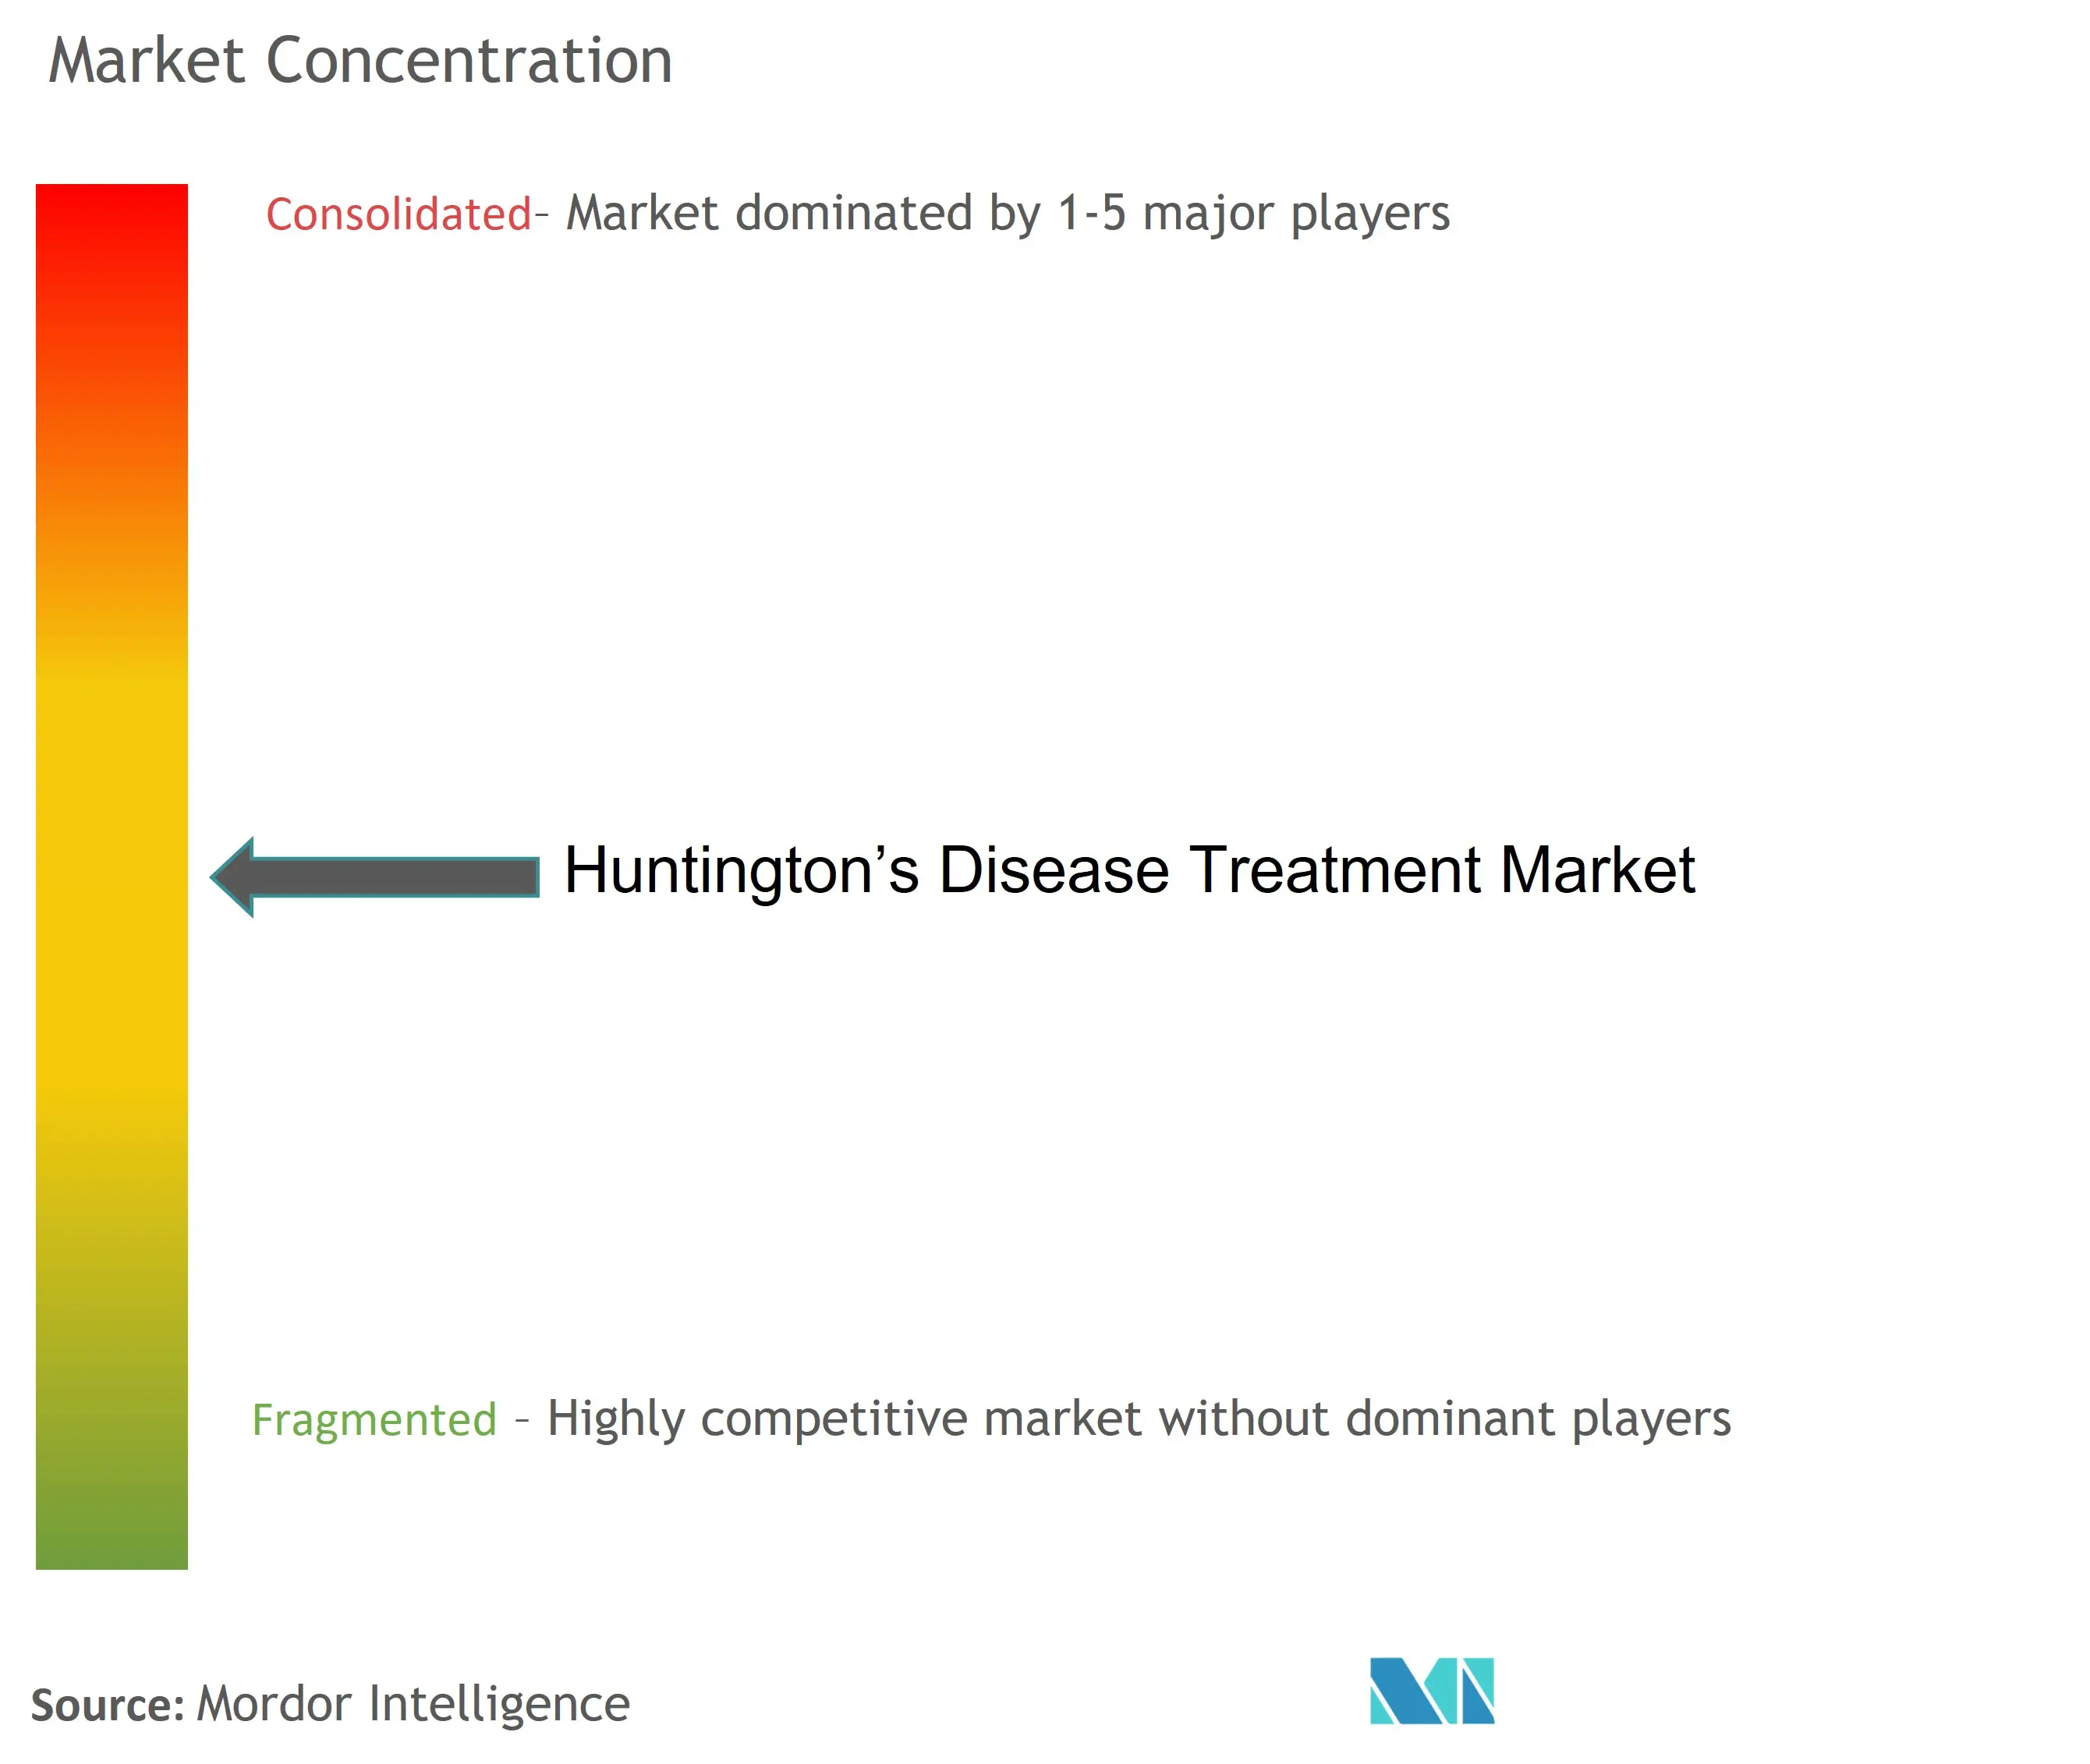 Huntington’s Disease Treatment Market Concentration